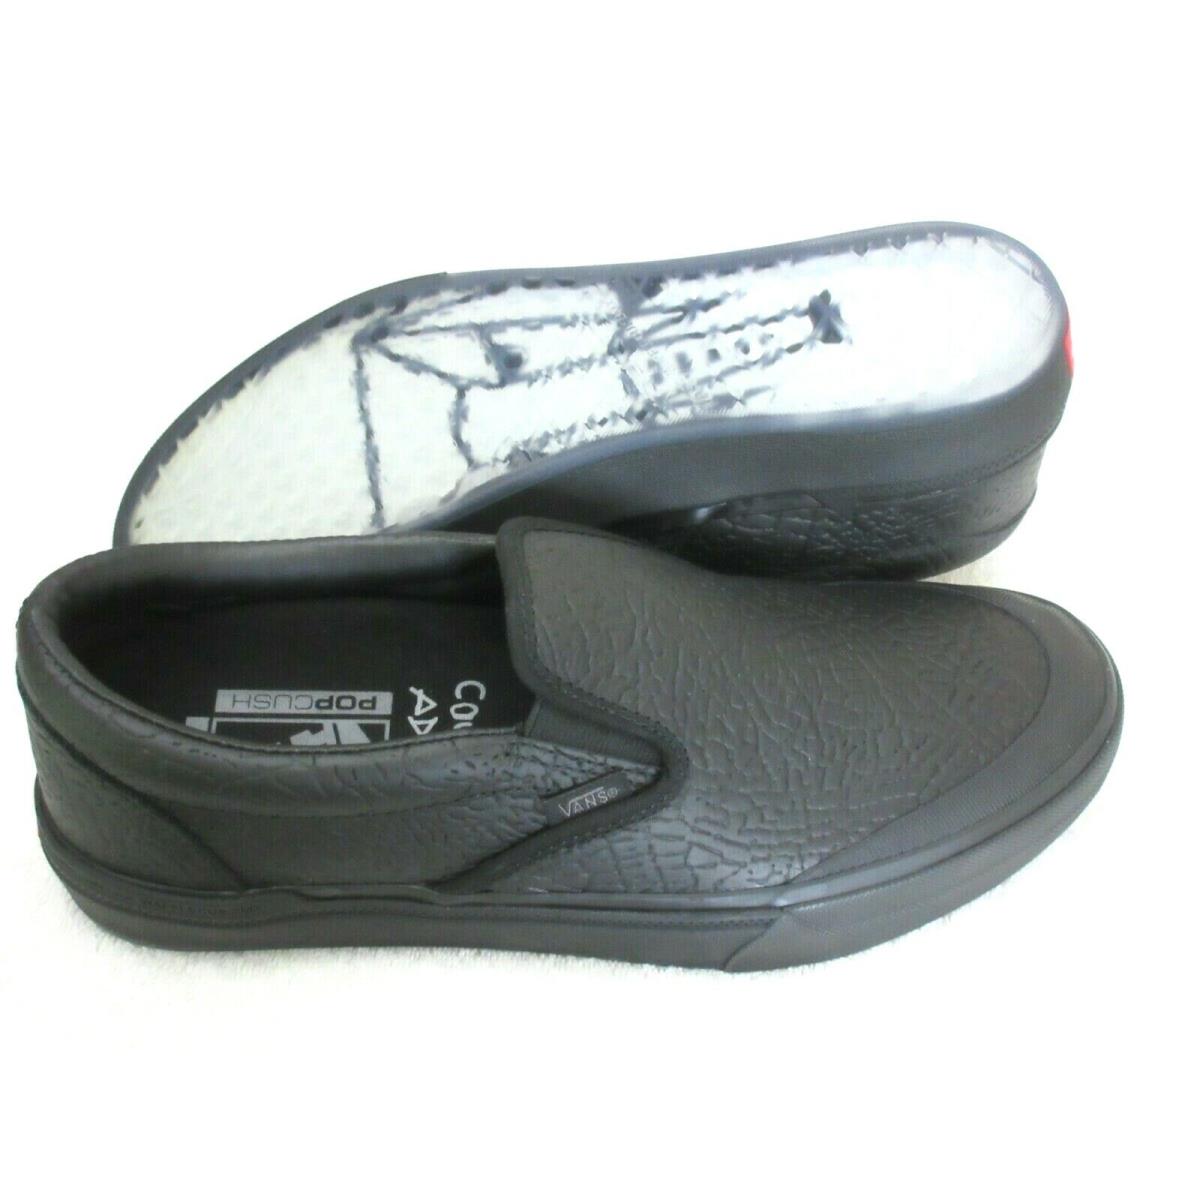 Vans Men`s Bmx Slip-on Courage Adams Black Elephant Suede Shoes Size 8.5